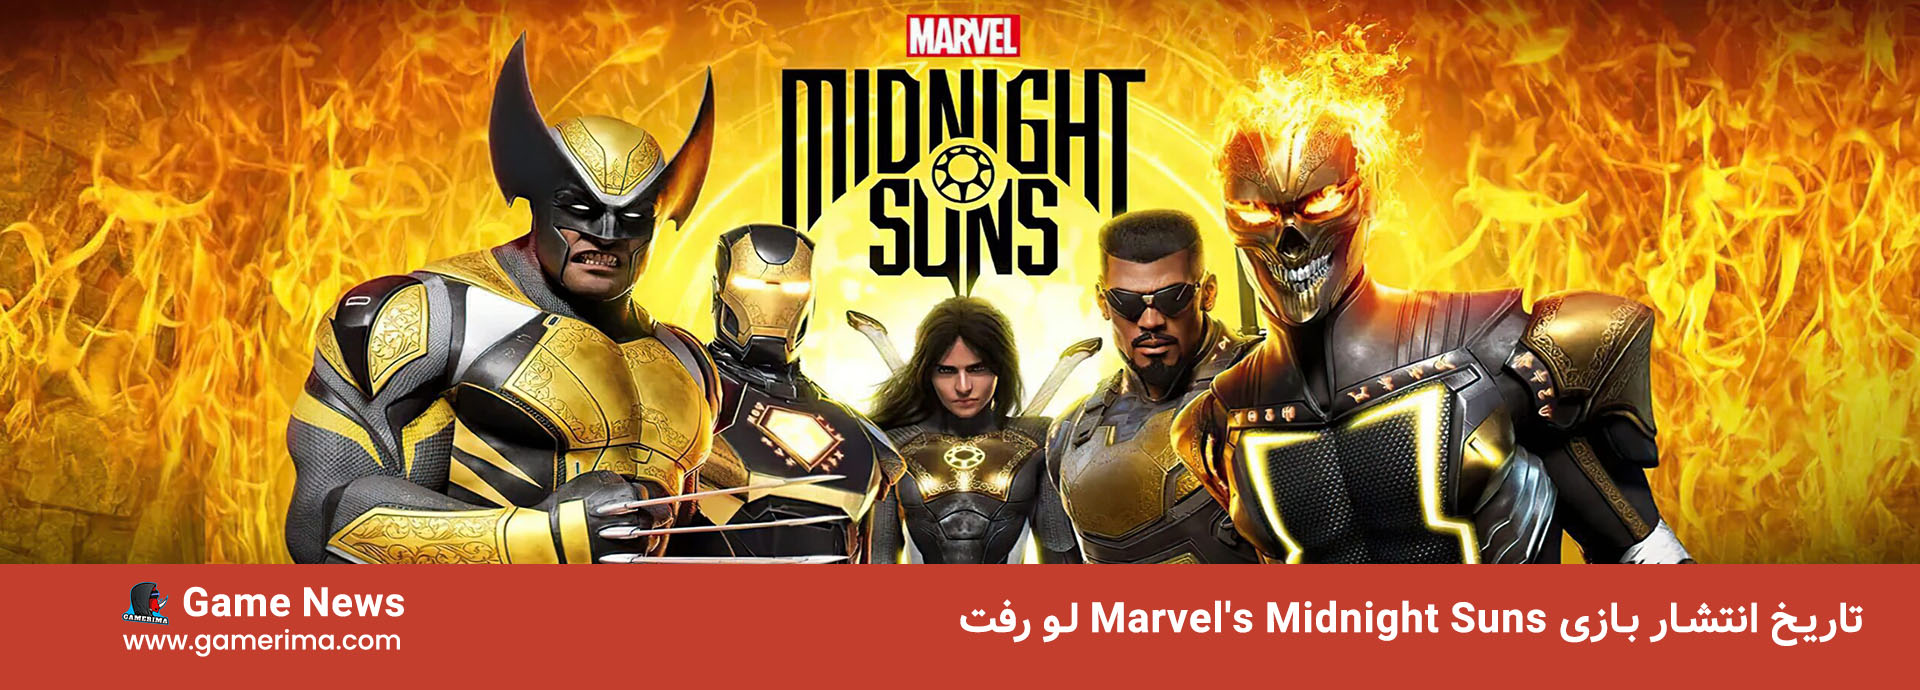 تاریخ انتشار بازی Marvel’s Midnight Suns لو رفت